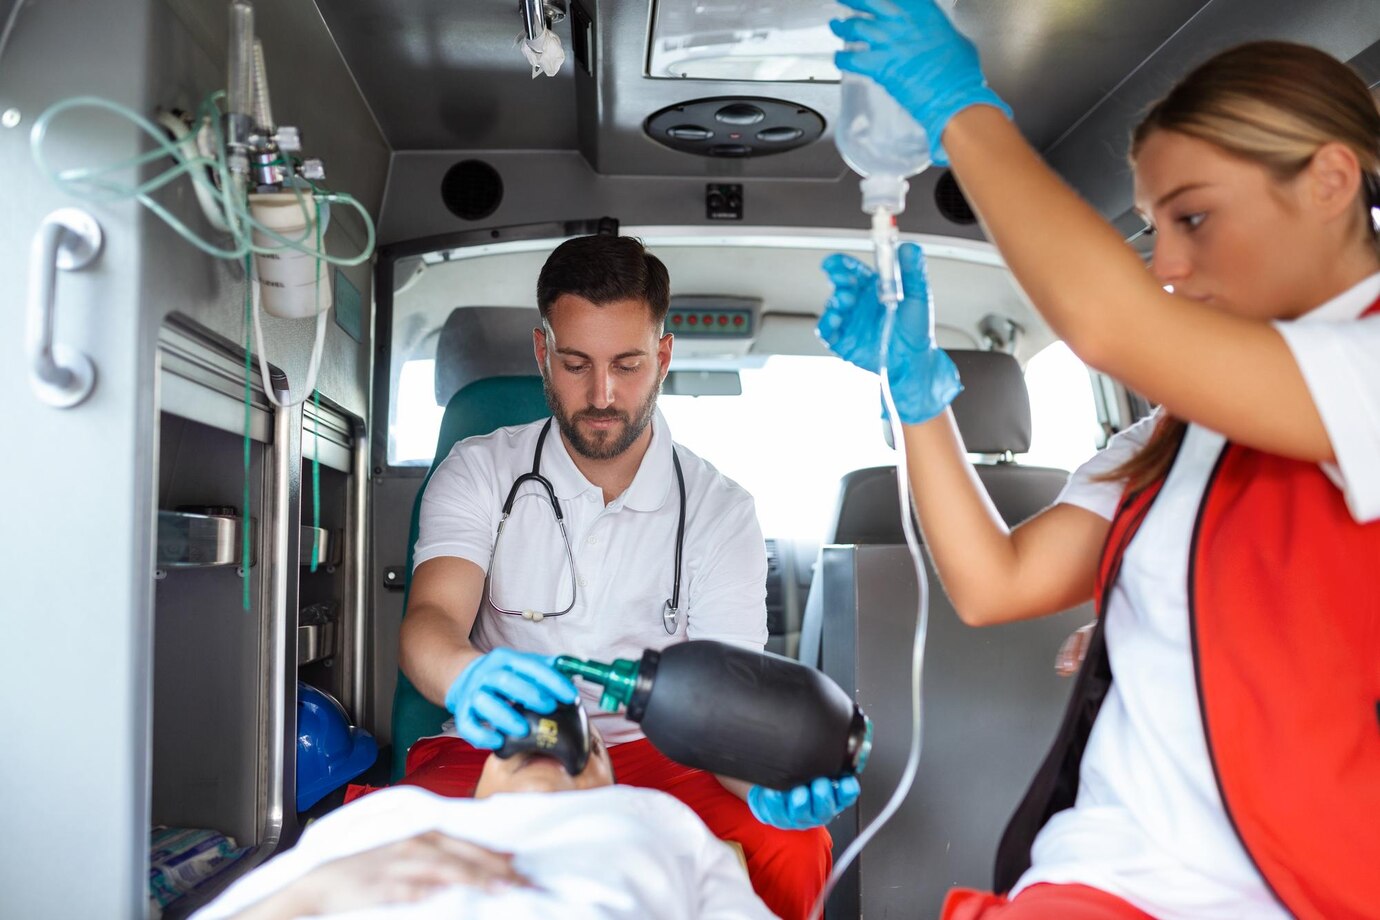 vista-interior-ambulancia-trabajadores-uniformados-servicios-emergencia-que-cuidan-al-paciente-camilla-pandemia-coronavirus_657921-1489